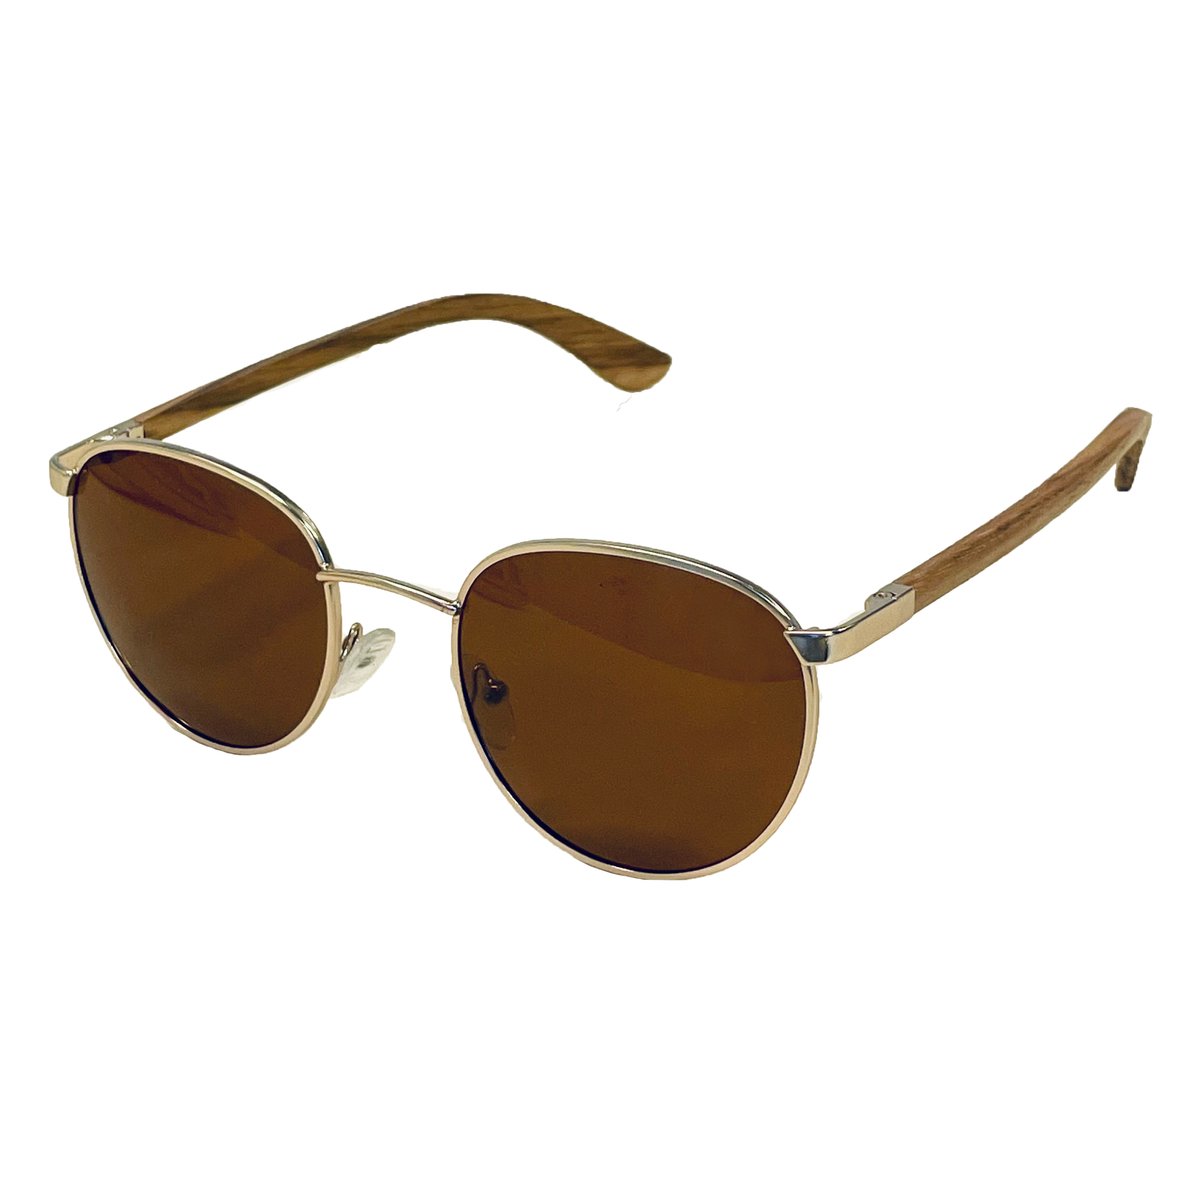 SMOOTH - ronde houten zonnebril - unisex model - UV400 gepolariseerde glazen van de hoogste kwaliteit - QUAVO GOLD